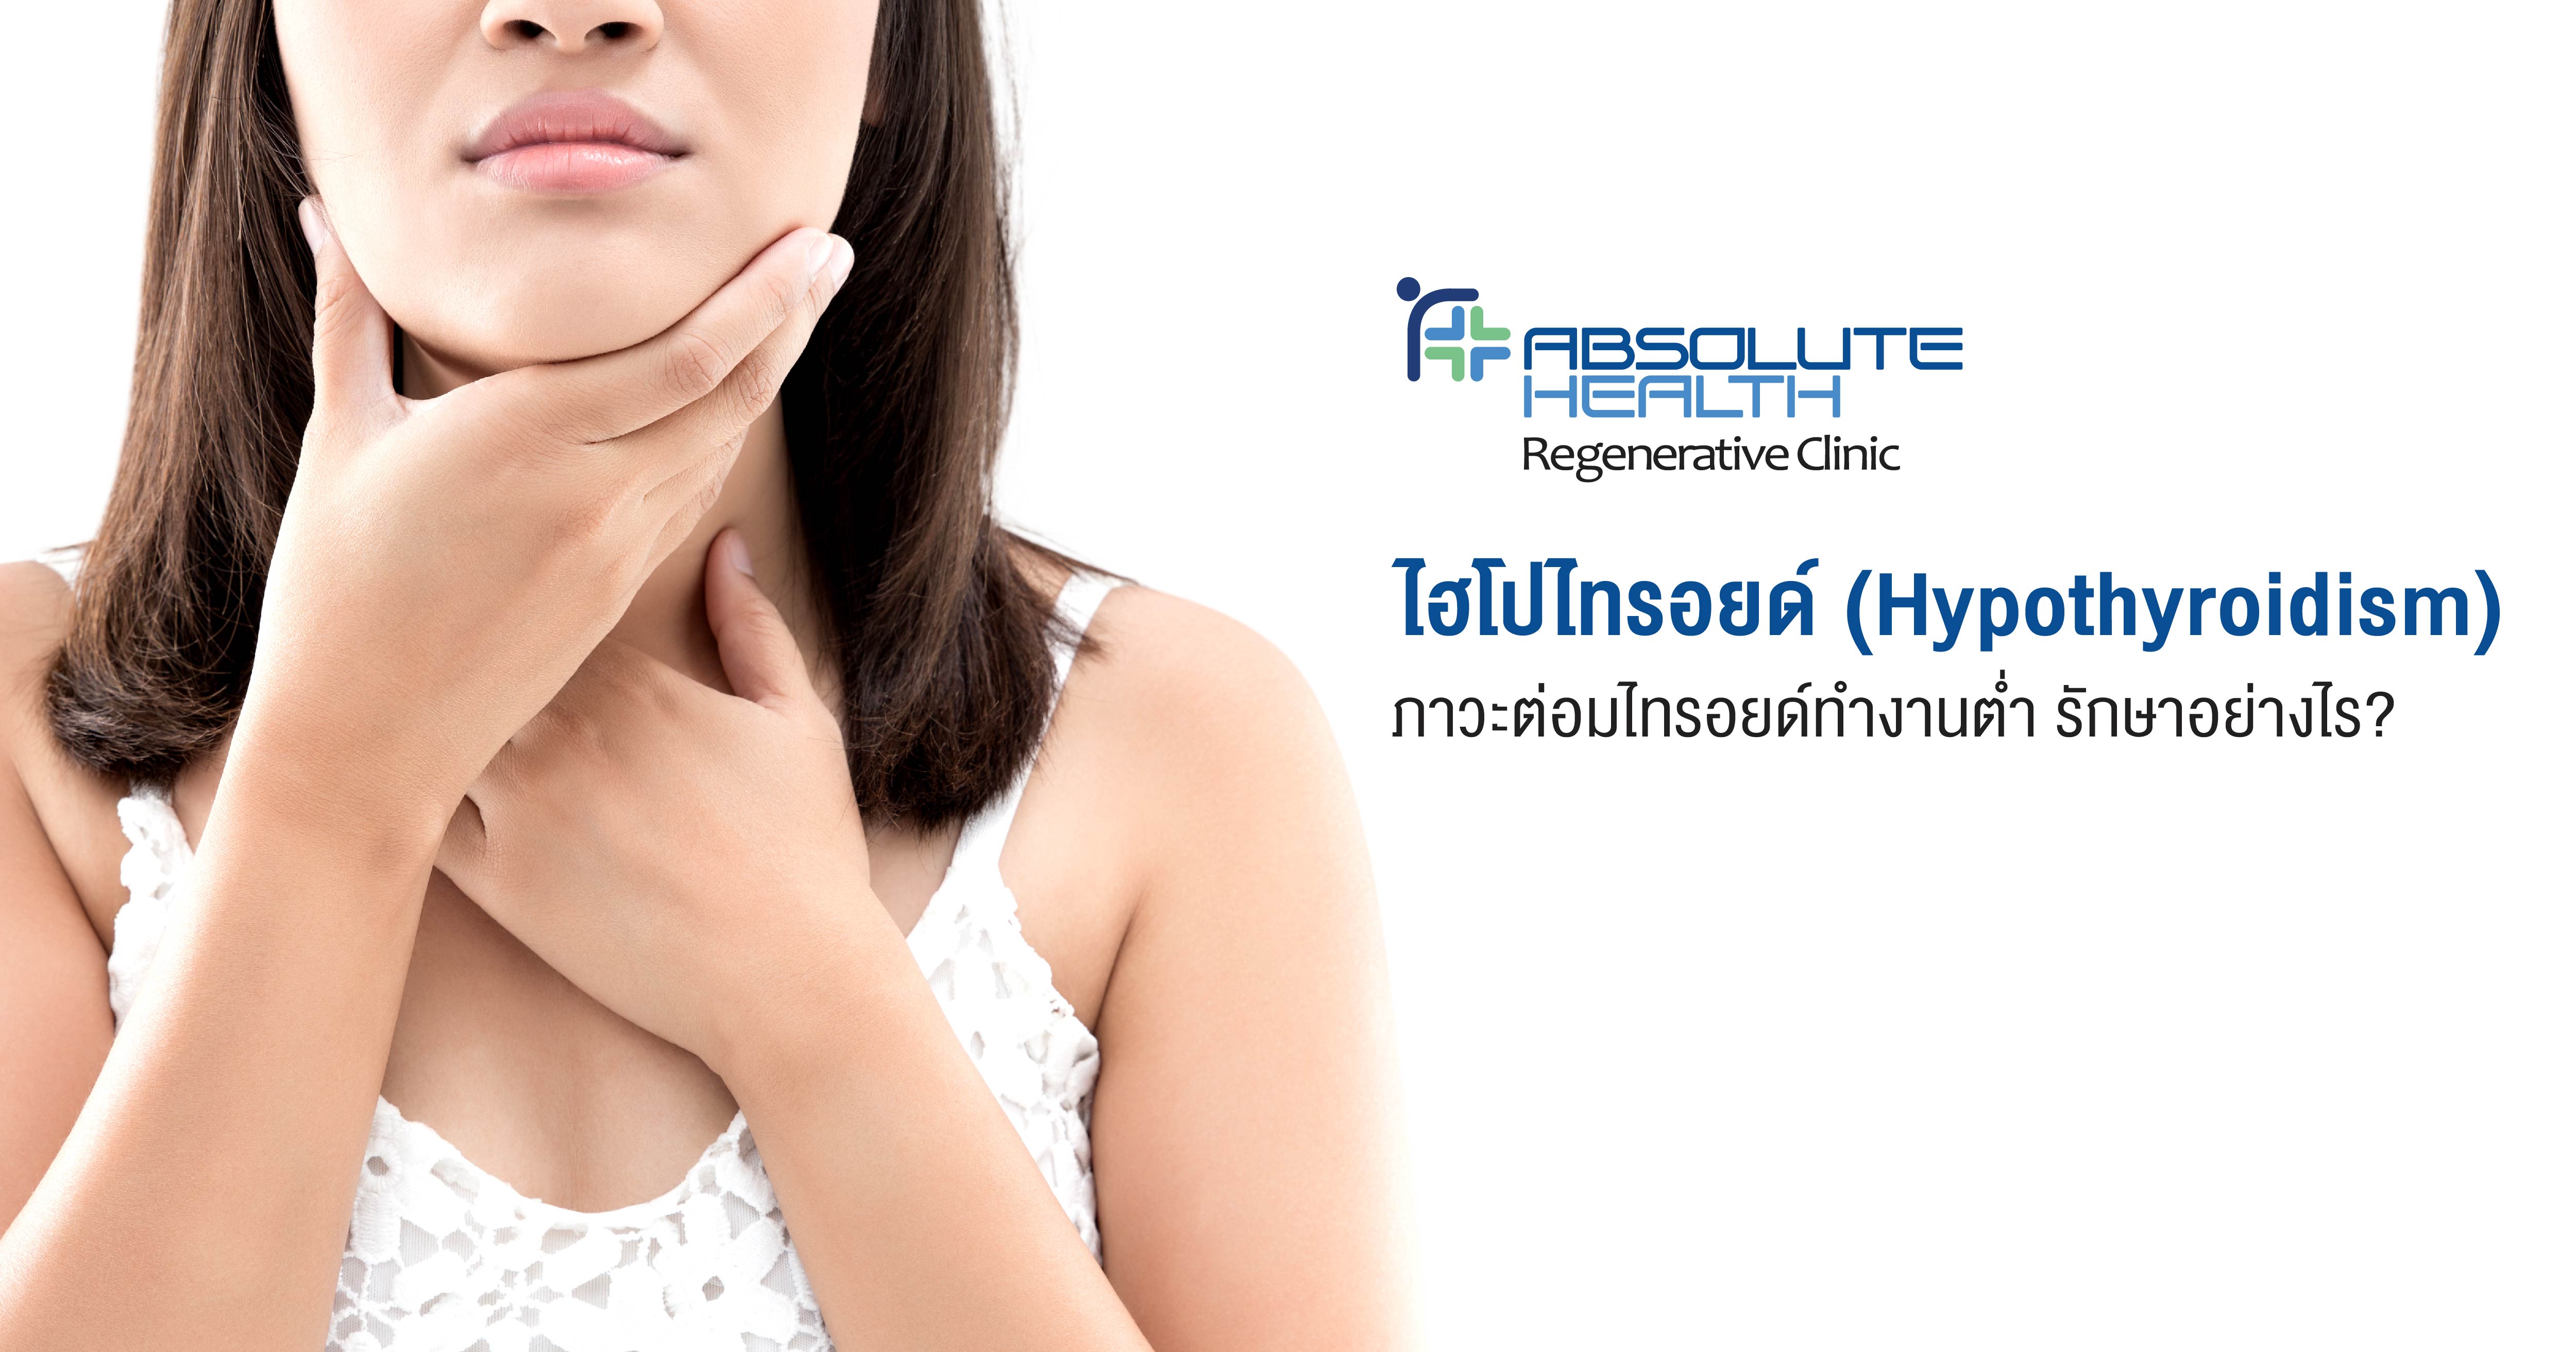 ไฮโปไทรอยด์ (Hypothyroidism)  ภาวะต่อมไทรอยด์ทำงานต่ำ รักษาอย่างไร